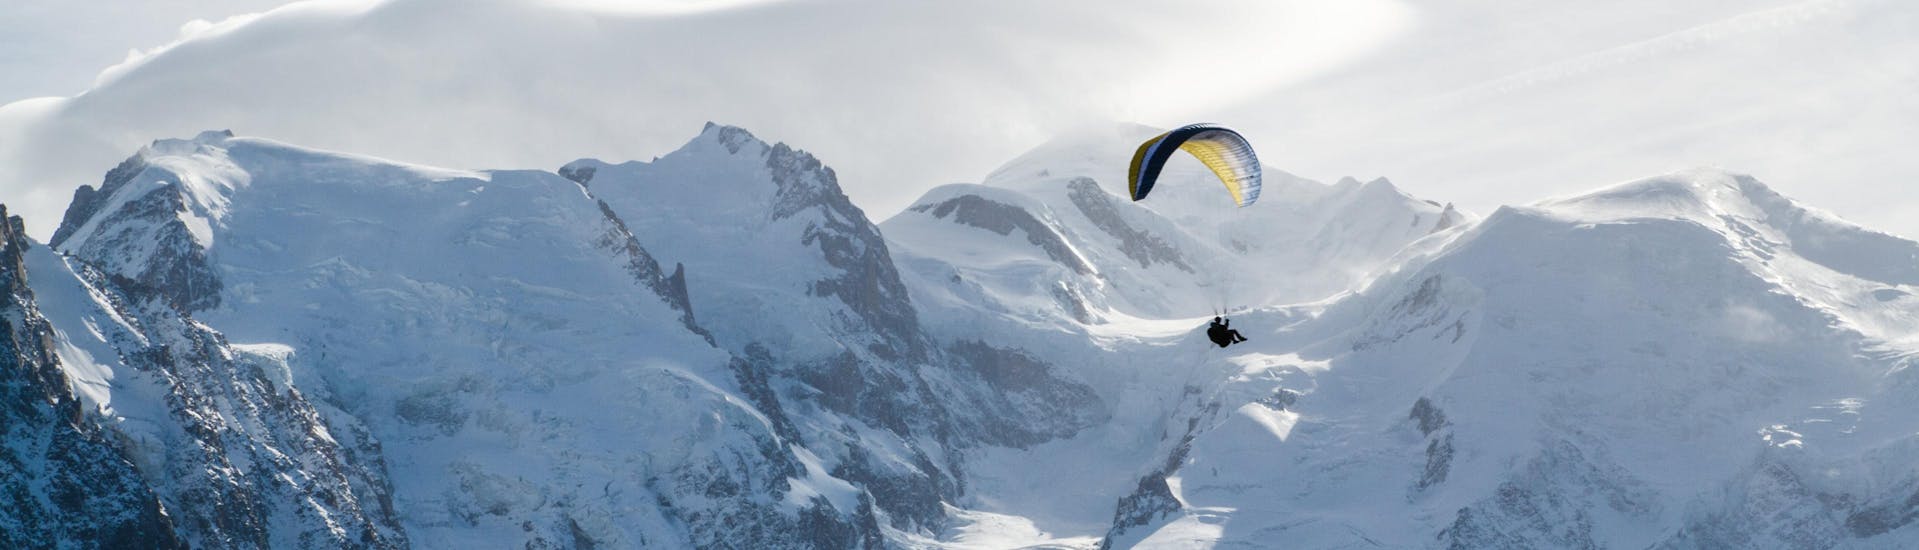 Une personne effectue un vol en parapente dans la vallée de Chamonix depuis Plan Praz avec en fond les montagnes enneigées.